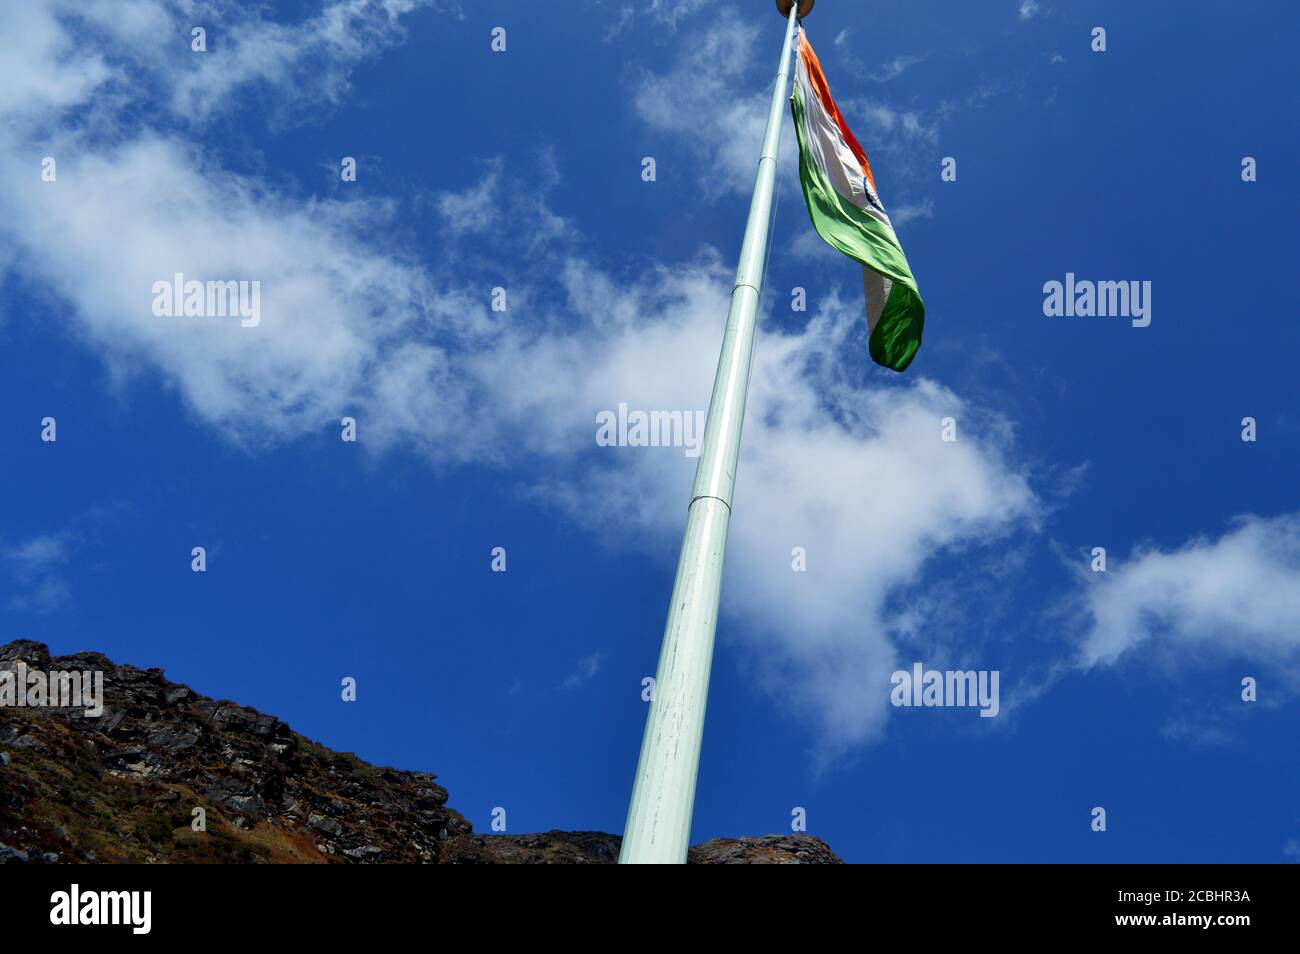 Bandera Volando Alto Fotos E Im Genes De Stock Alamy